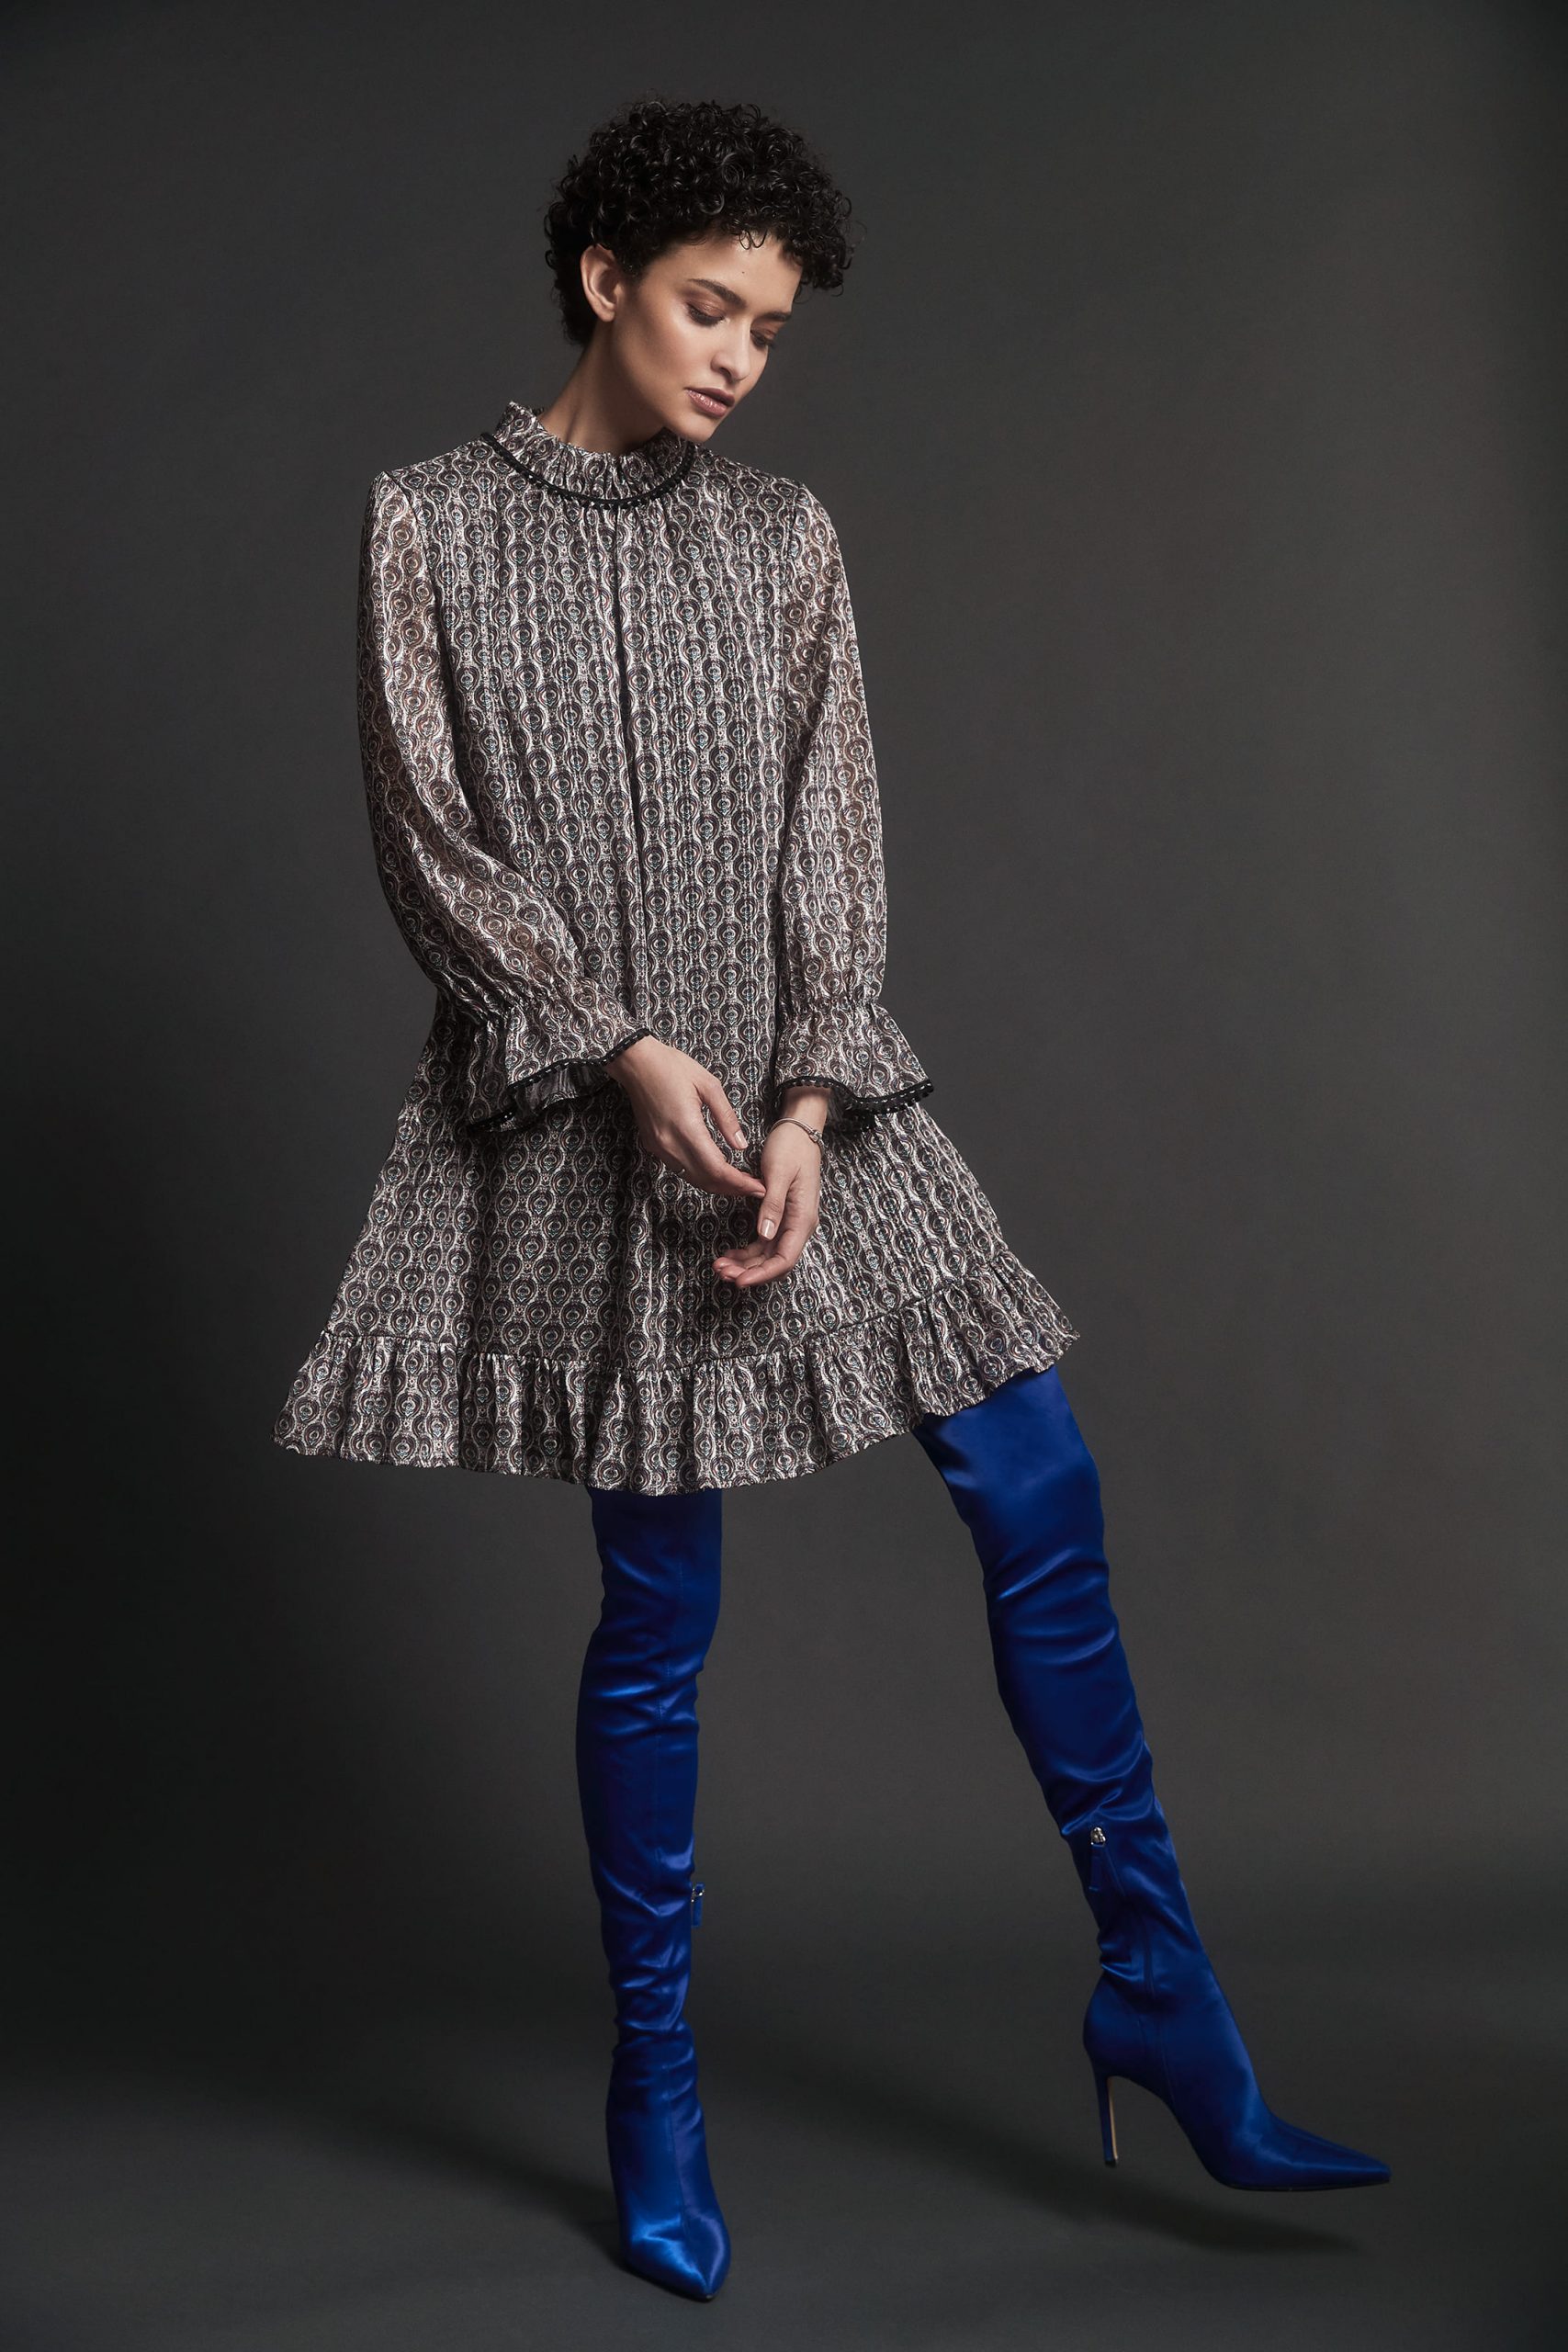 Gekonntes Highlight: Kleid in gedeckten Brauntönen kombiniert mit leuchtend blauen Overknees